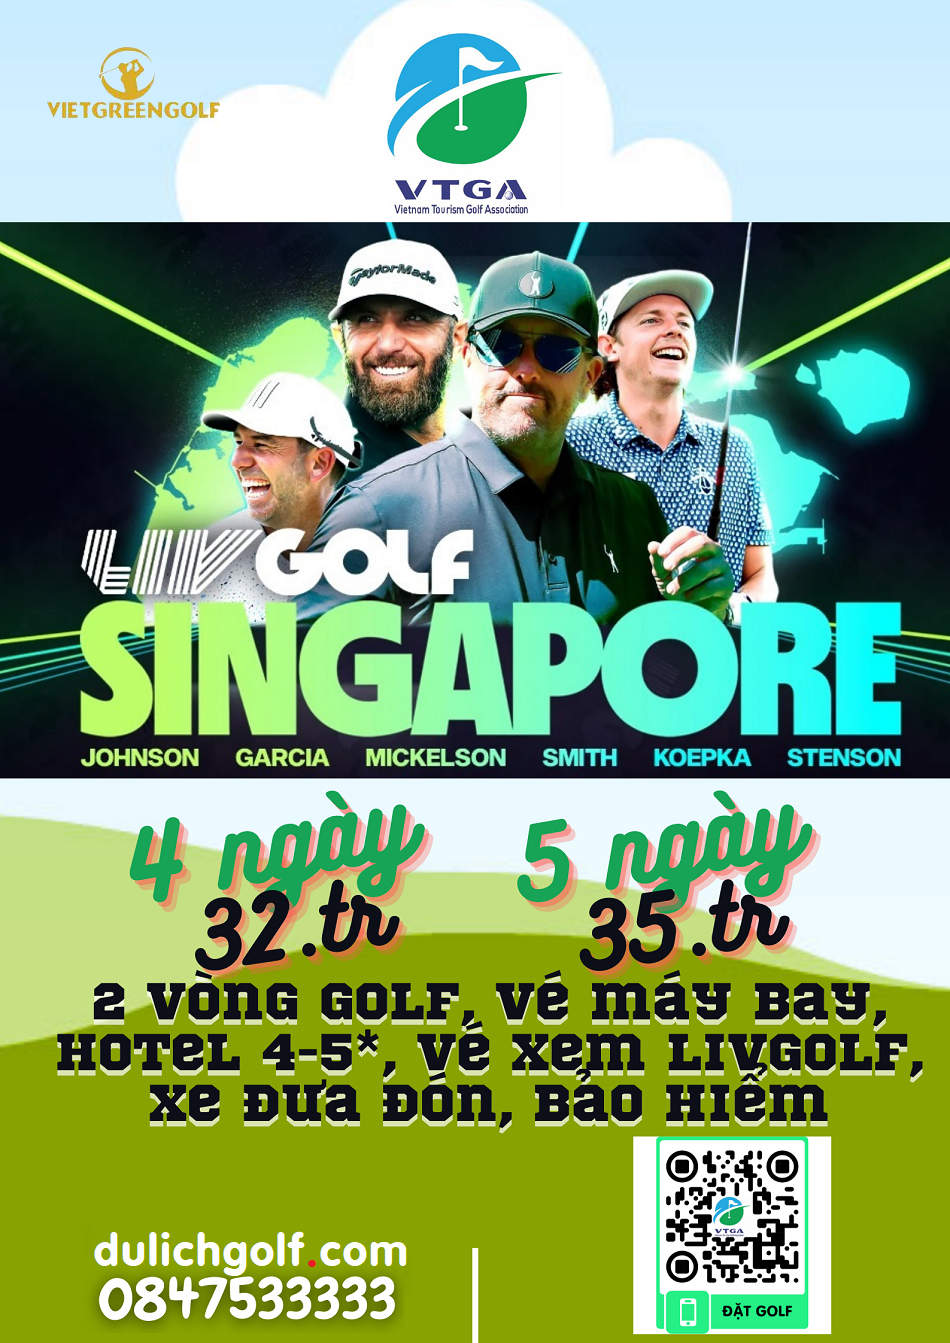 Tour xem Golf LIV Singapore 4 ngày 2 vòng golf, ks 4 sao, vé xem LIV 2 ngày, VIP